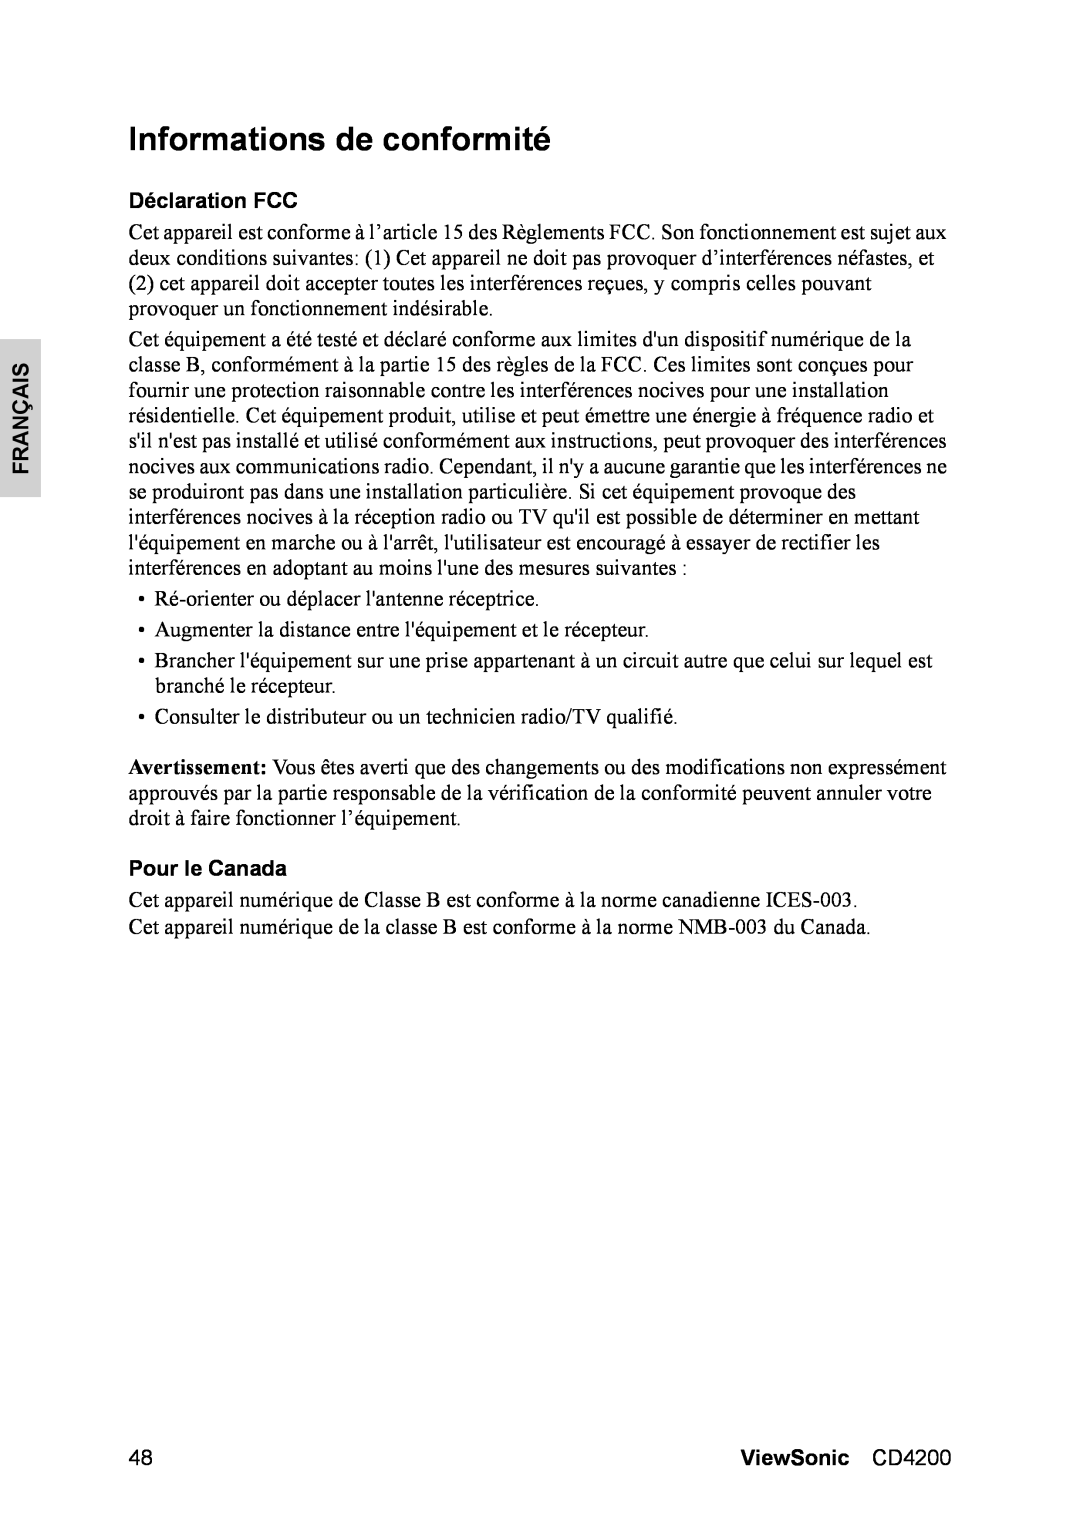 ViewSonic manual Informations de conformité, Déclaration FCC, Pour le Canada, Français, ViewSonic CD4200 